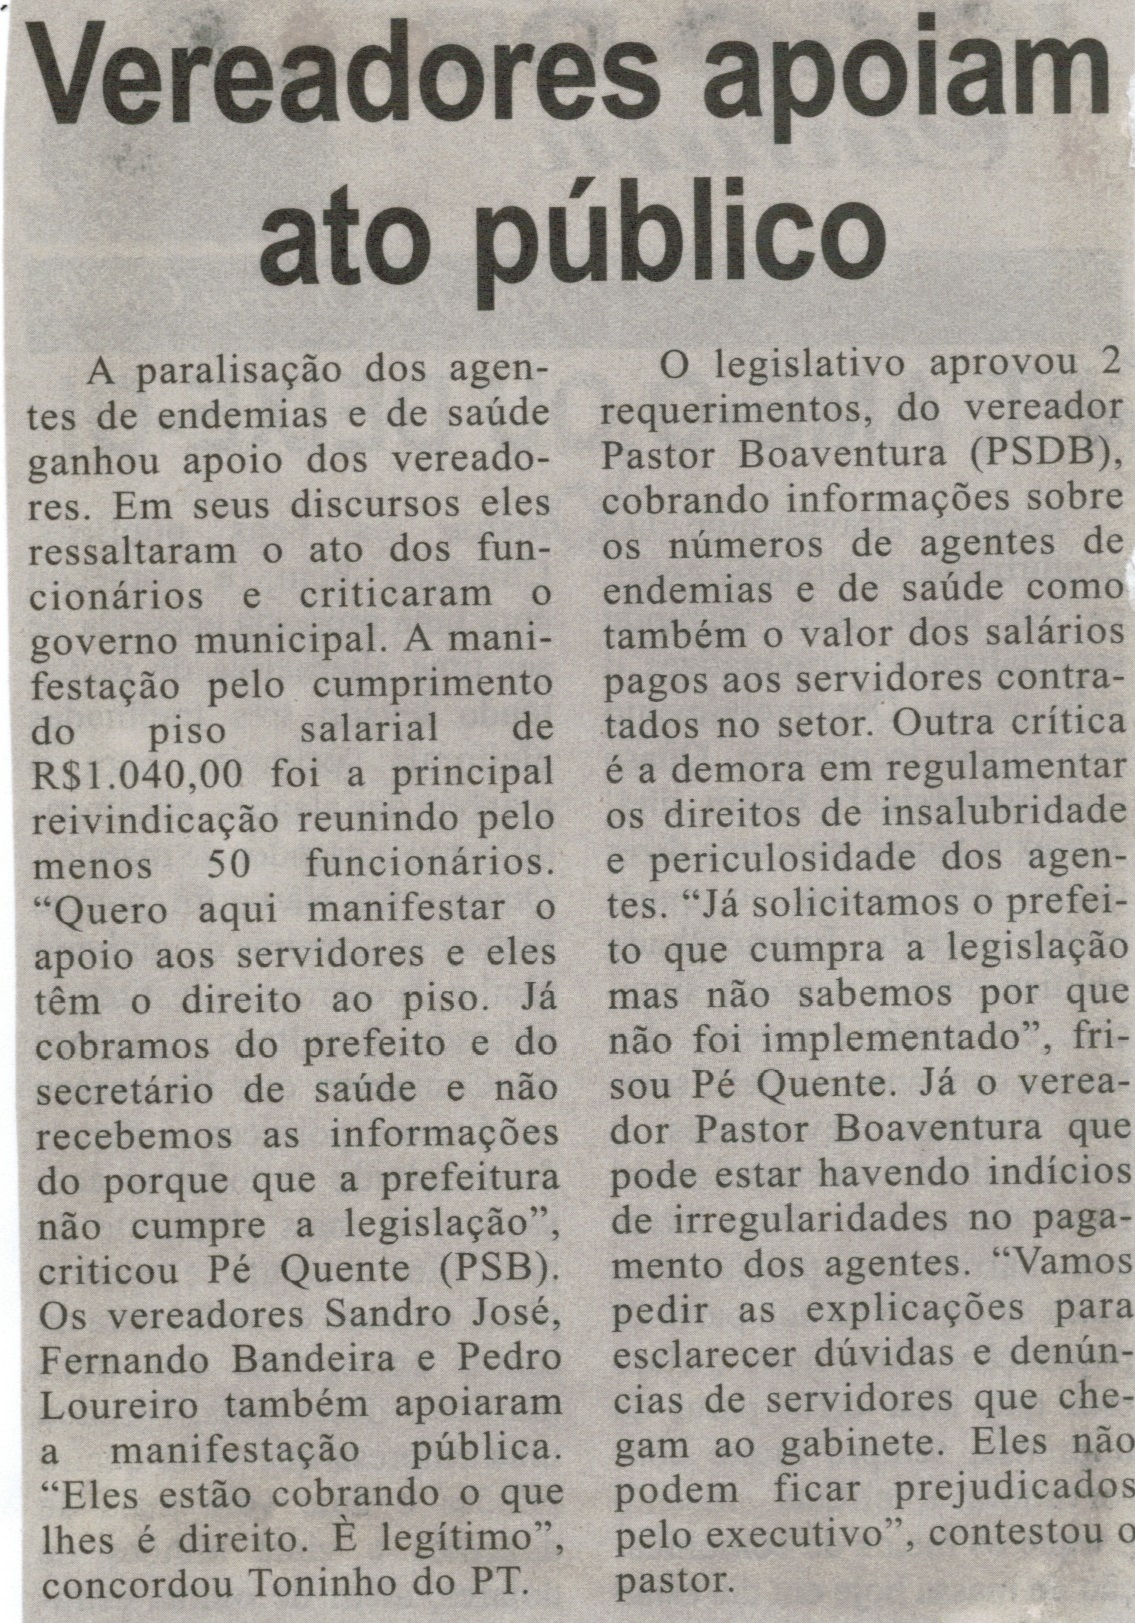 Vereadores apoiam ato público. Correio de Minas, Conselheiro Lafaiete, 07 mar. 2015, p. 06.